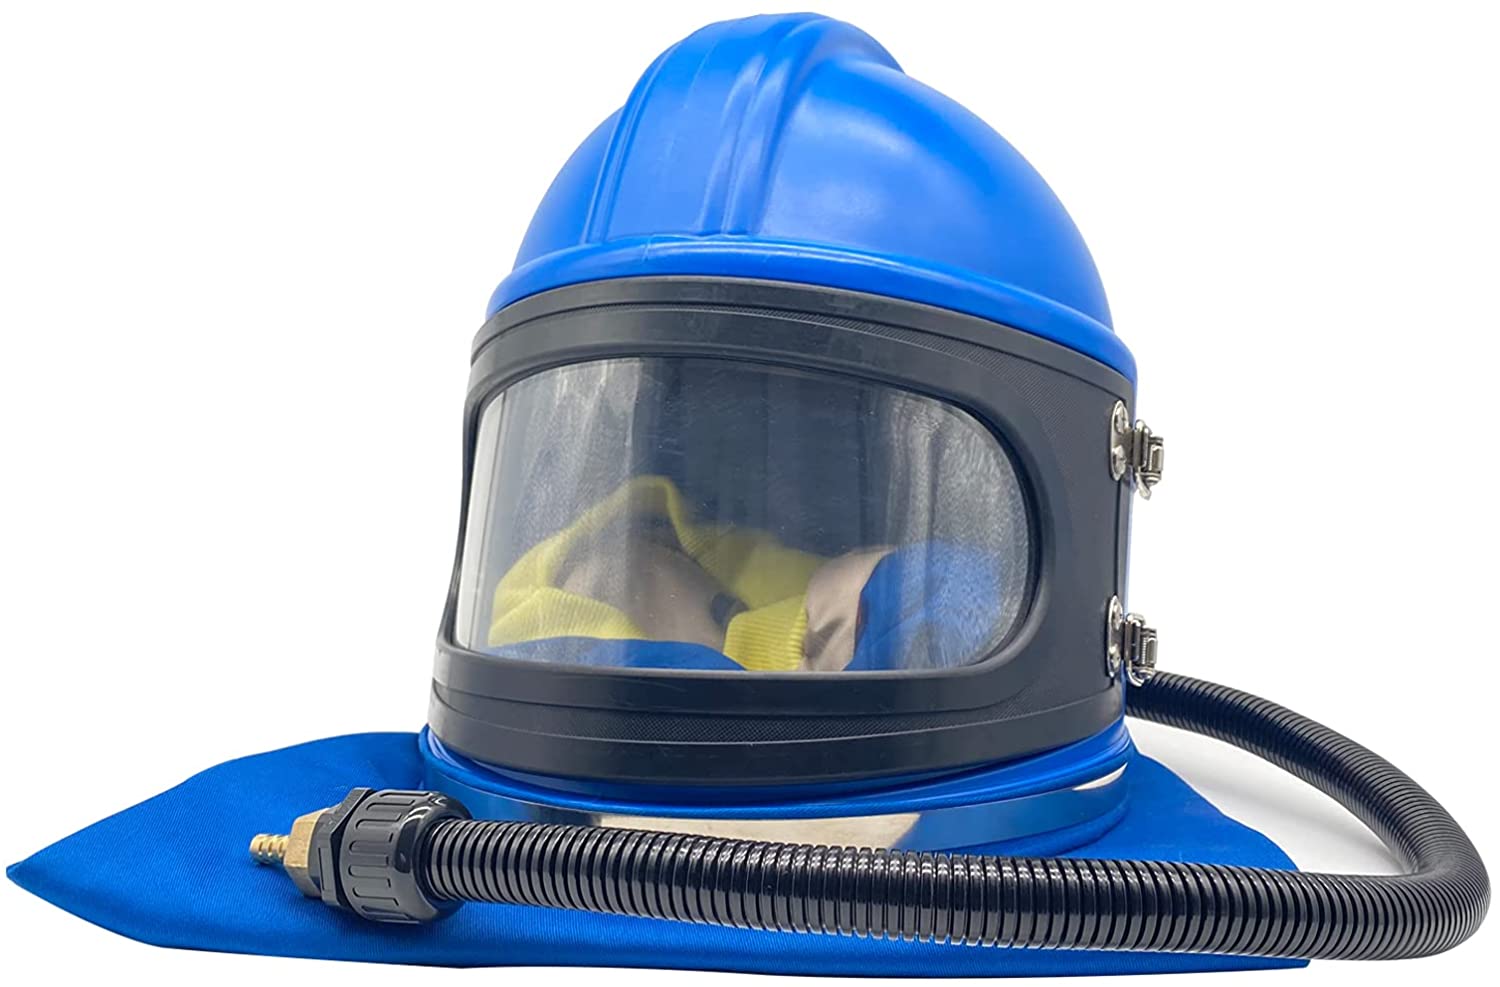 ABS Blasting Painting Dust Protective Helmet Sandblast Hood